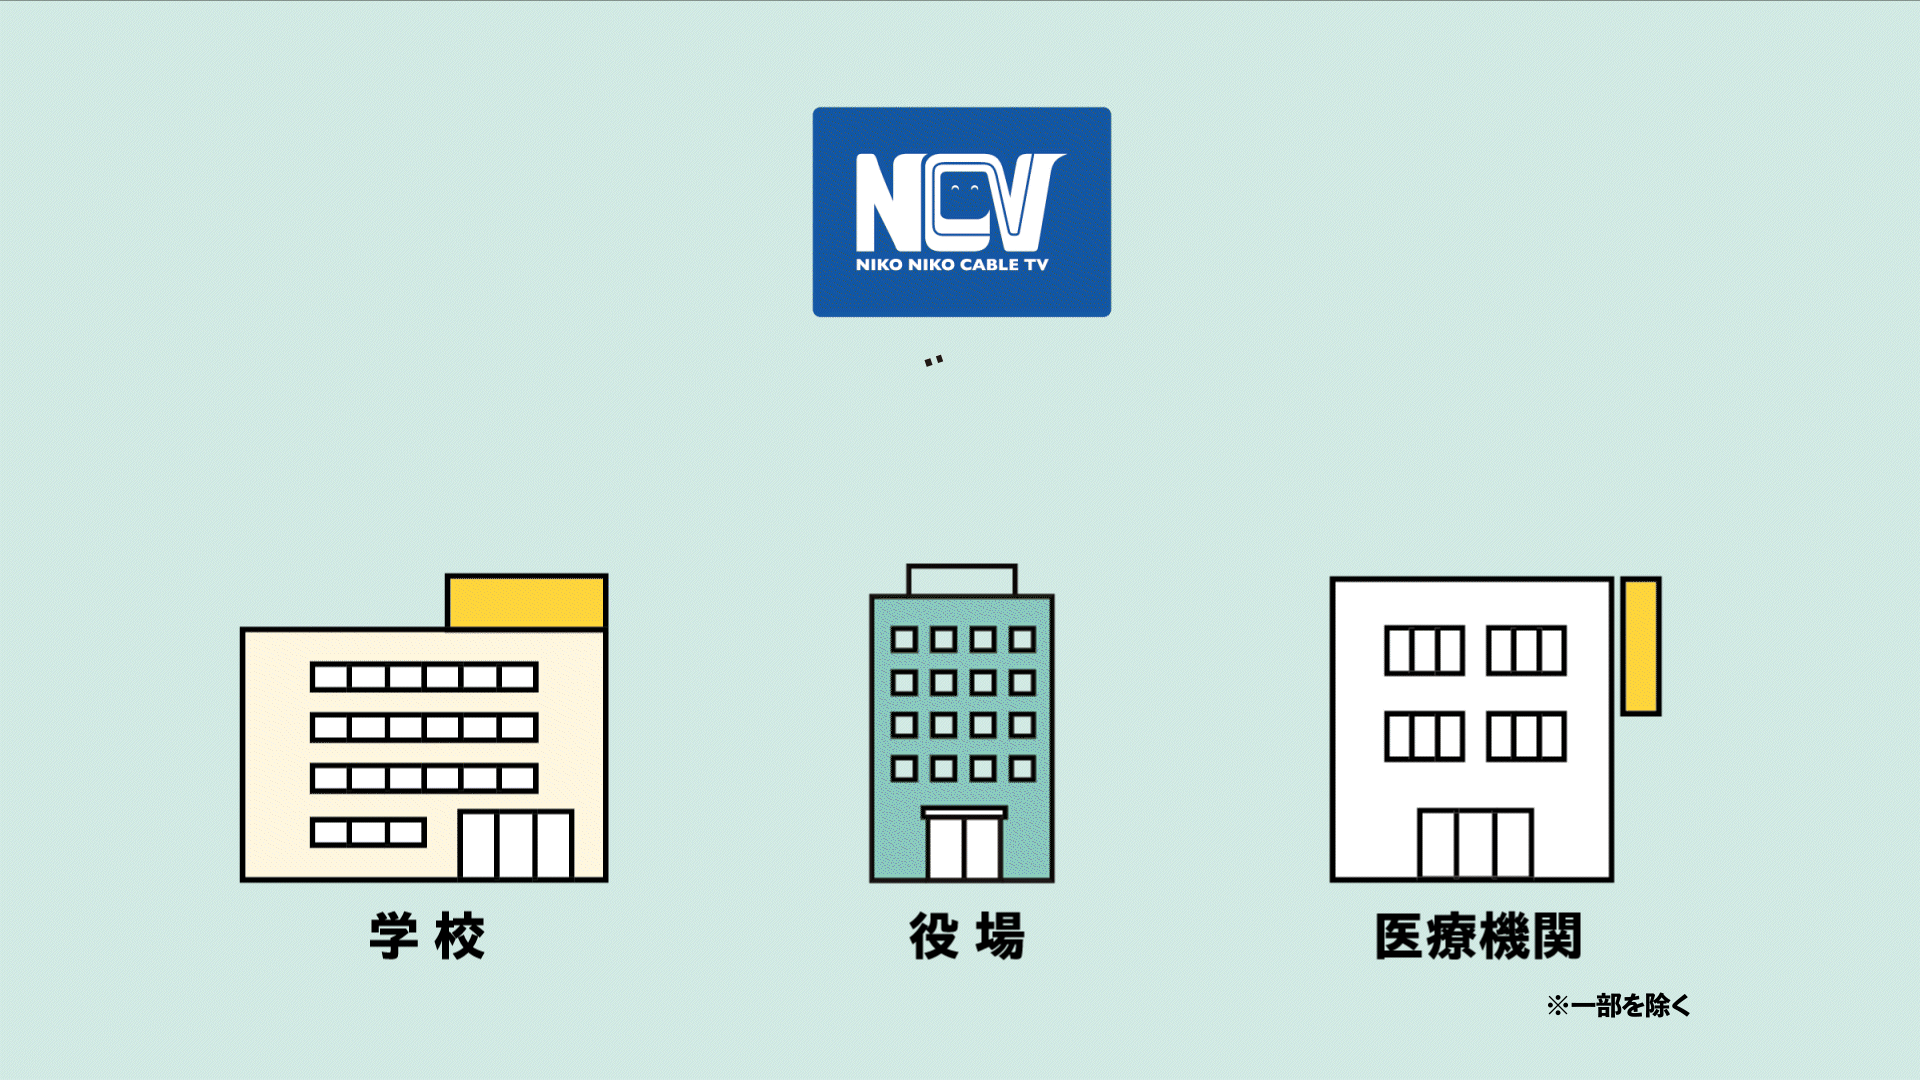 各自治体や医療機関におけるNCVのネットワークインフライメージ